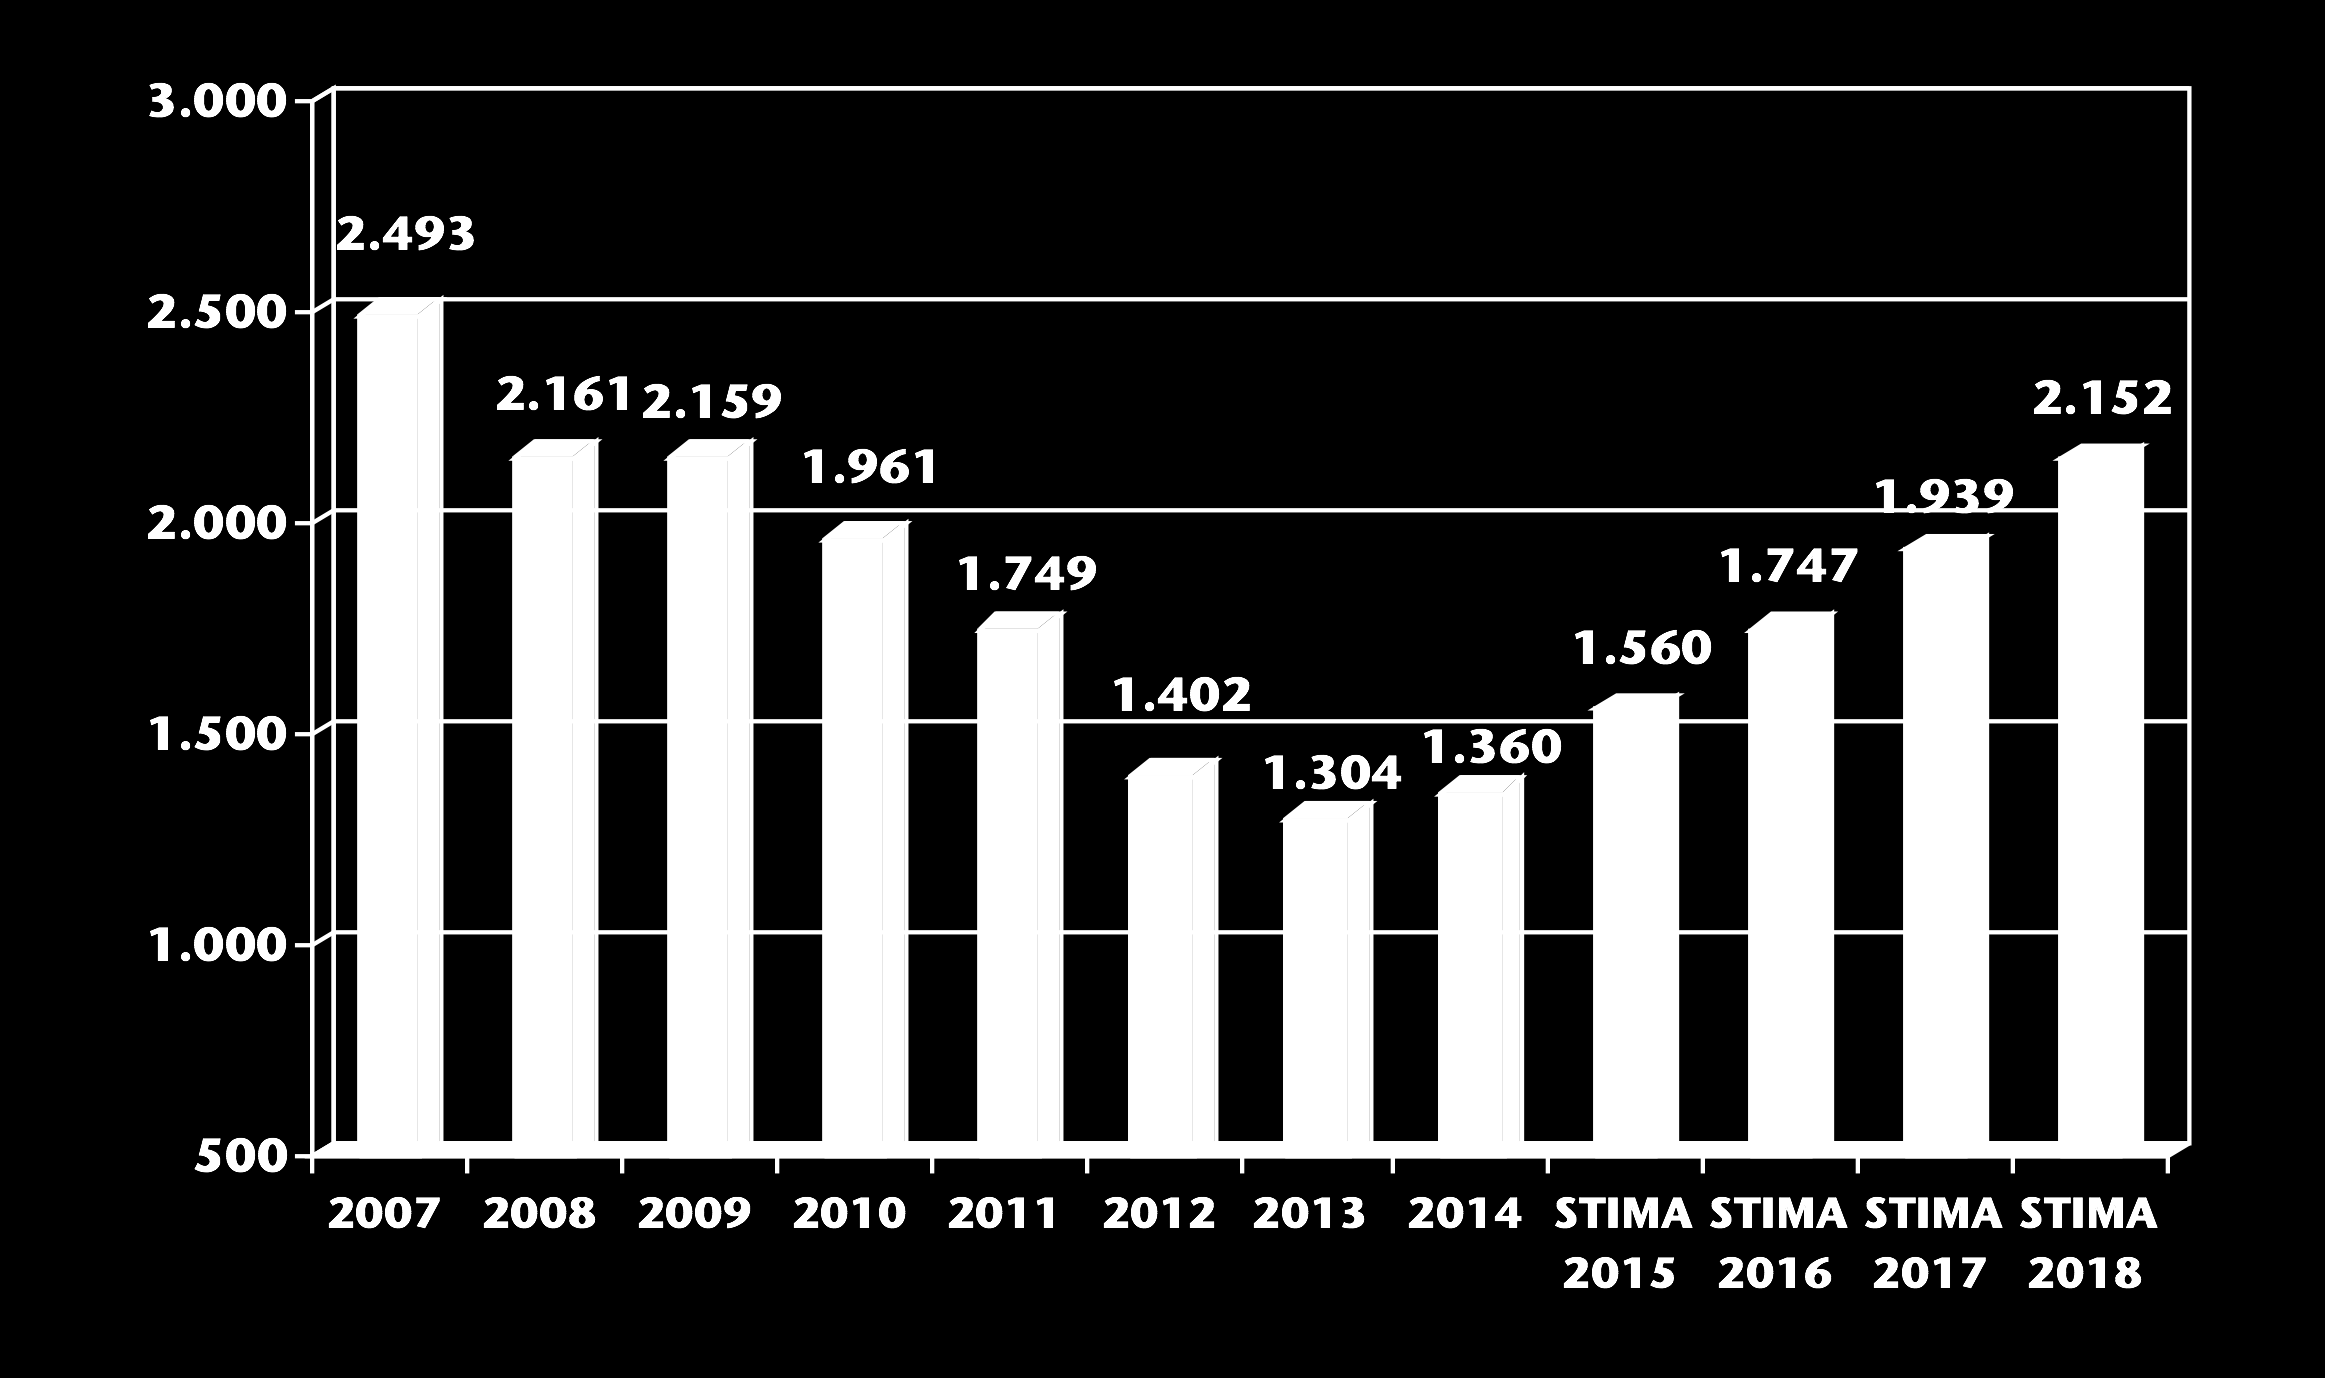 IMMATRICOLAZIONI AUTO IN ITALIA 2007-2018 (migliaia di unità) 2015: -37,4% 2014: -45,5%